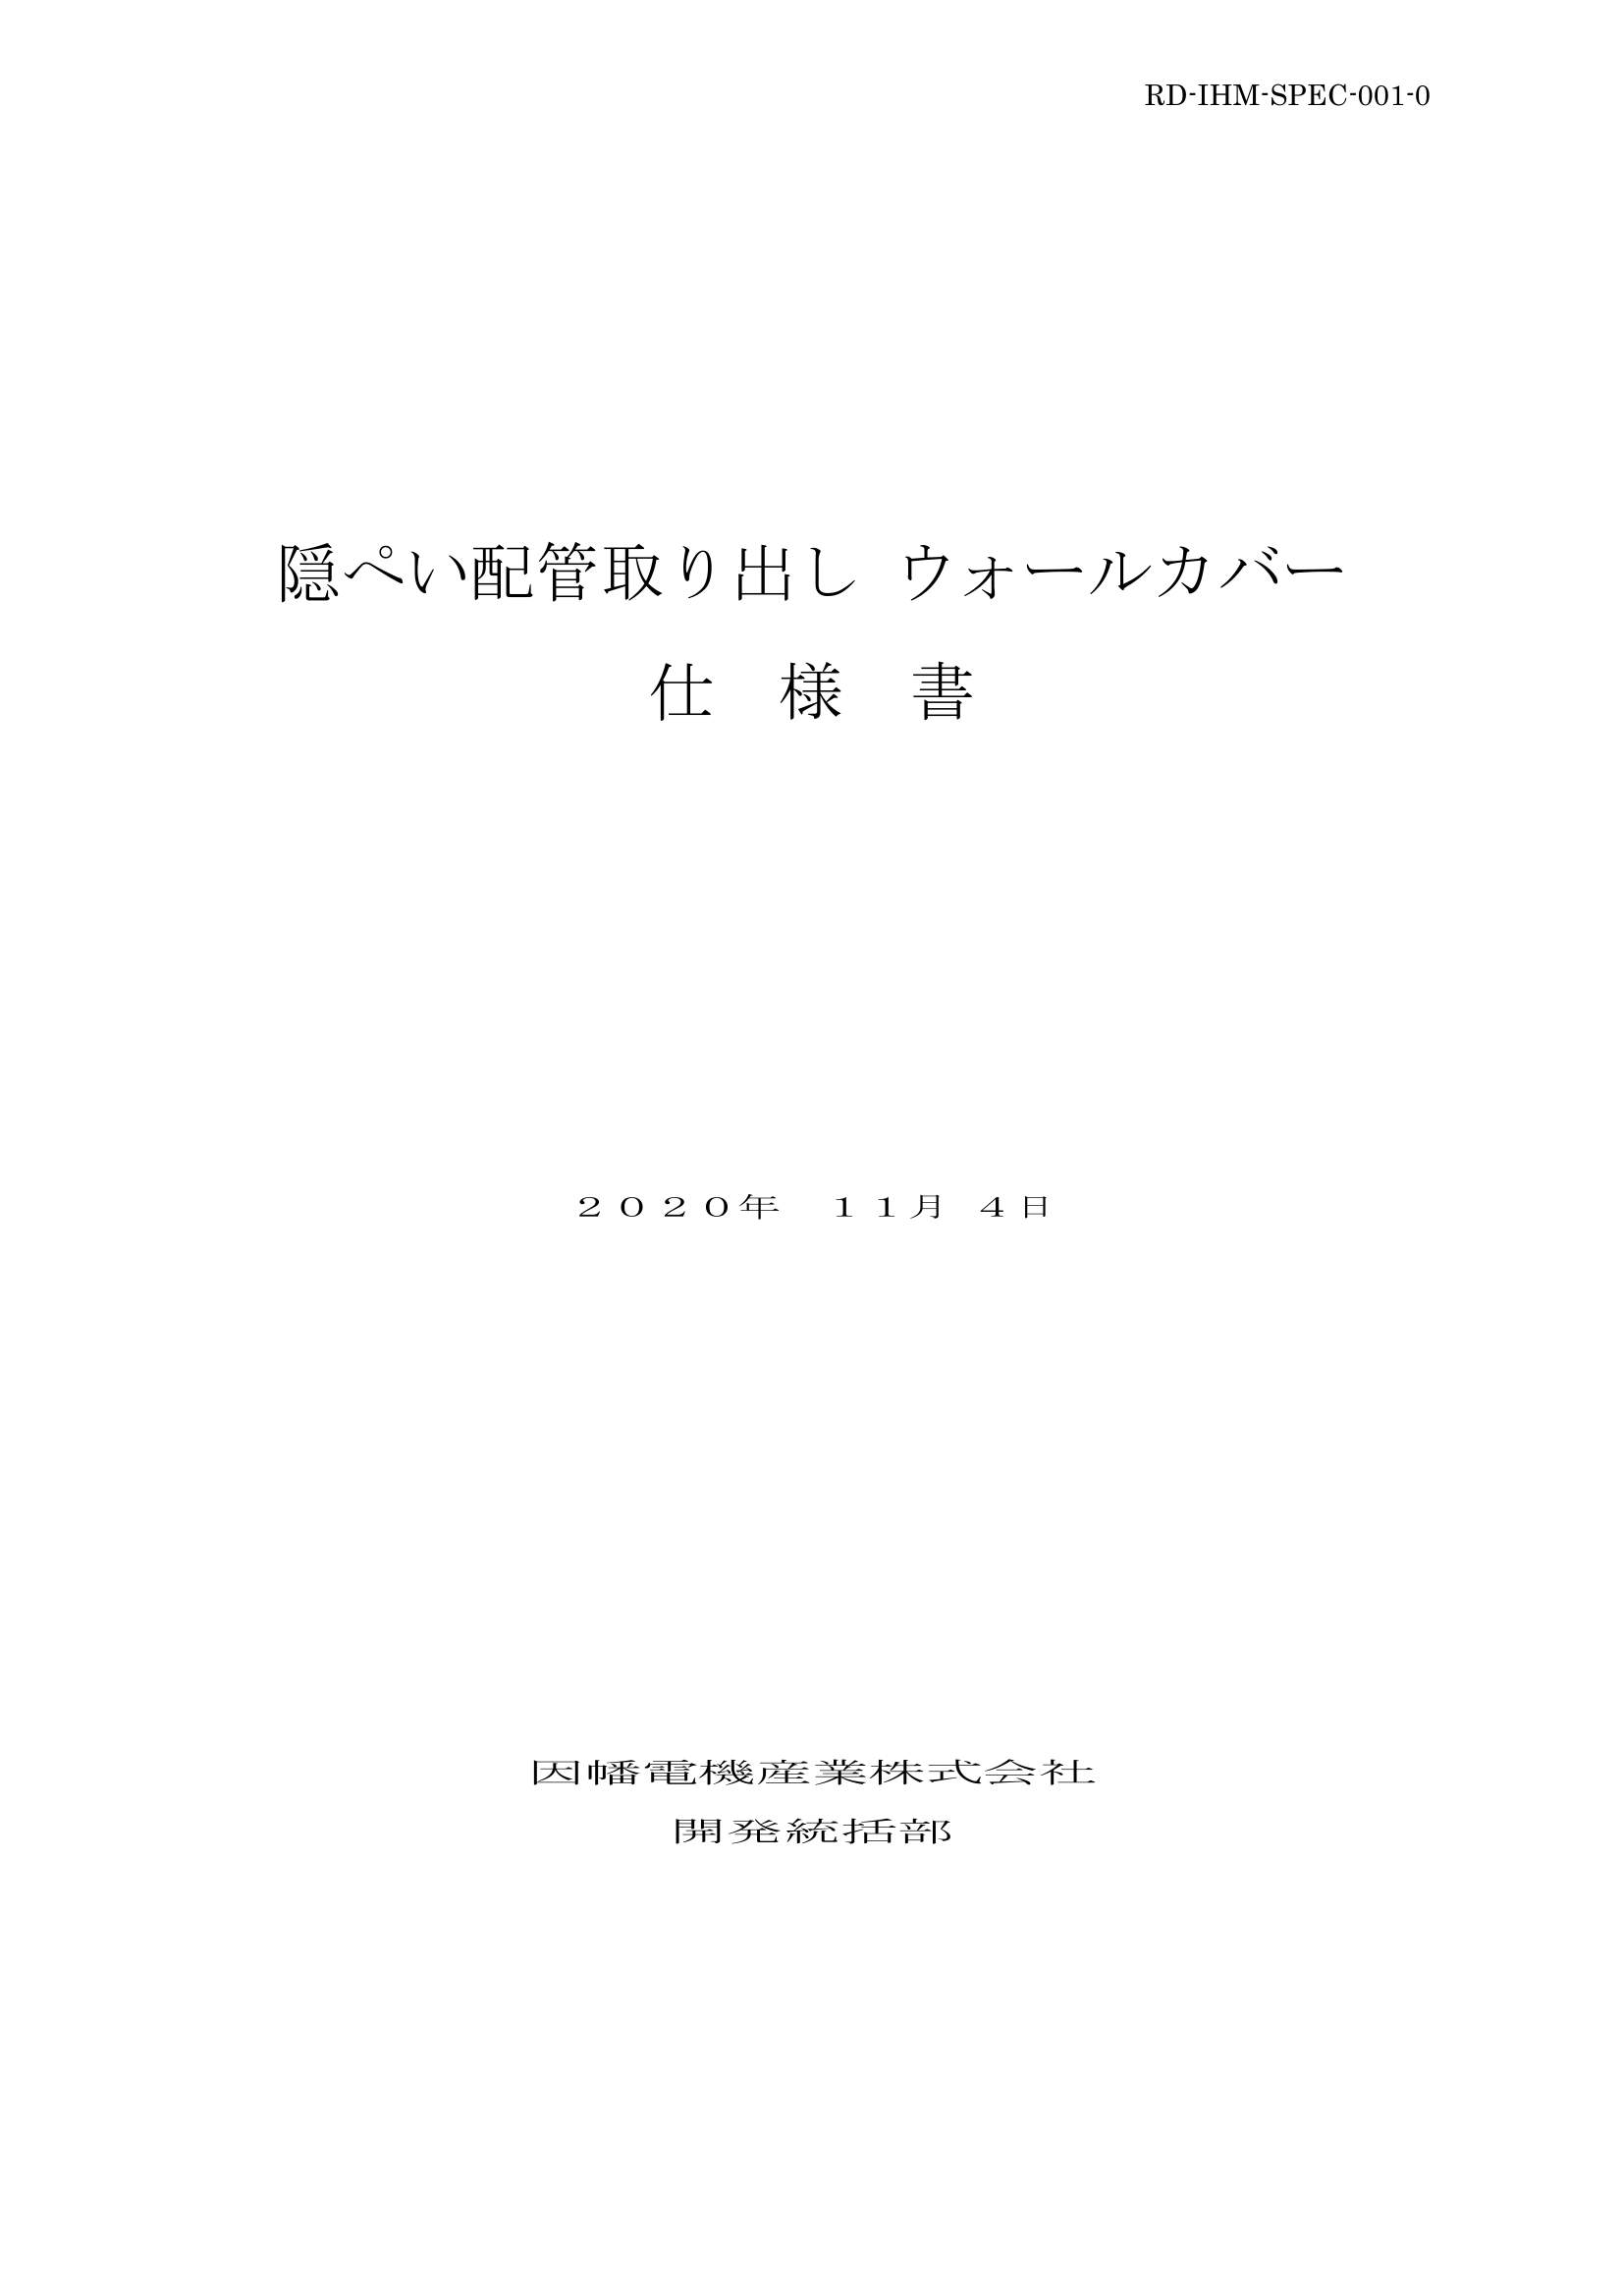 IHM_仕様書_20201104.pdf